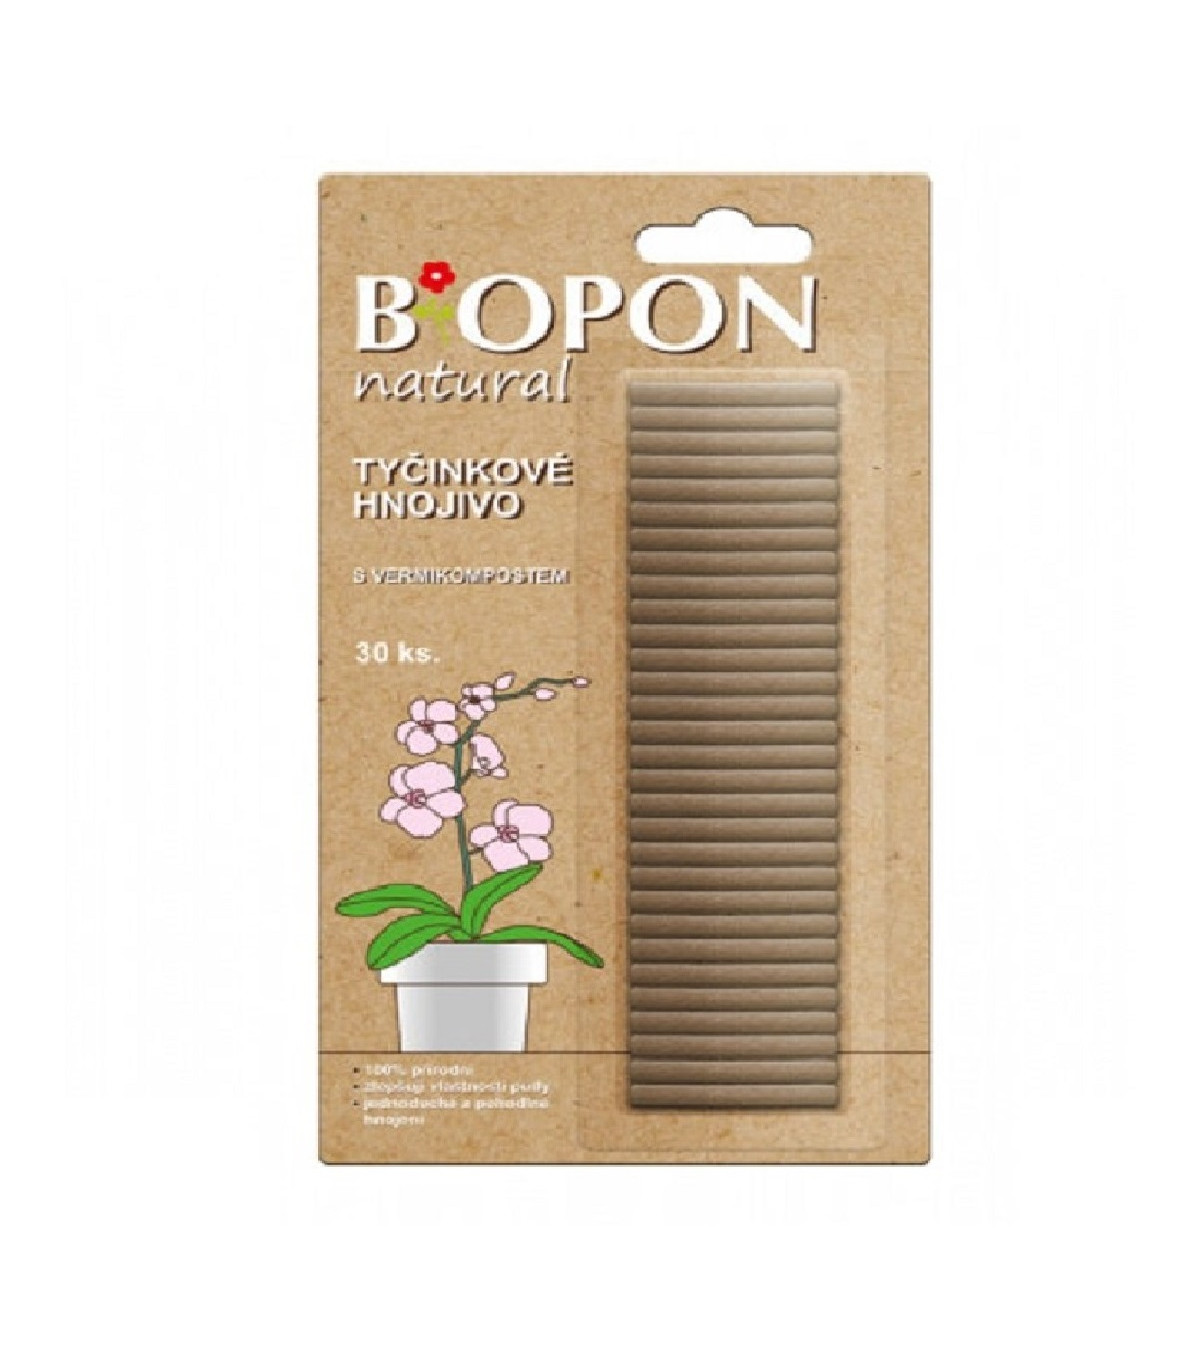 Tyčinkové hnojivo s vermikompostom - BoPon - hnojivá - 30 ks